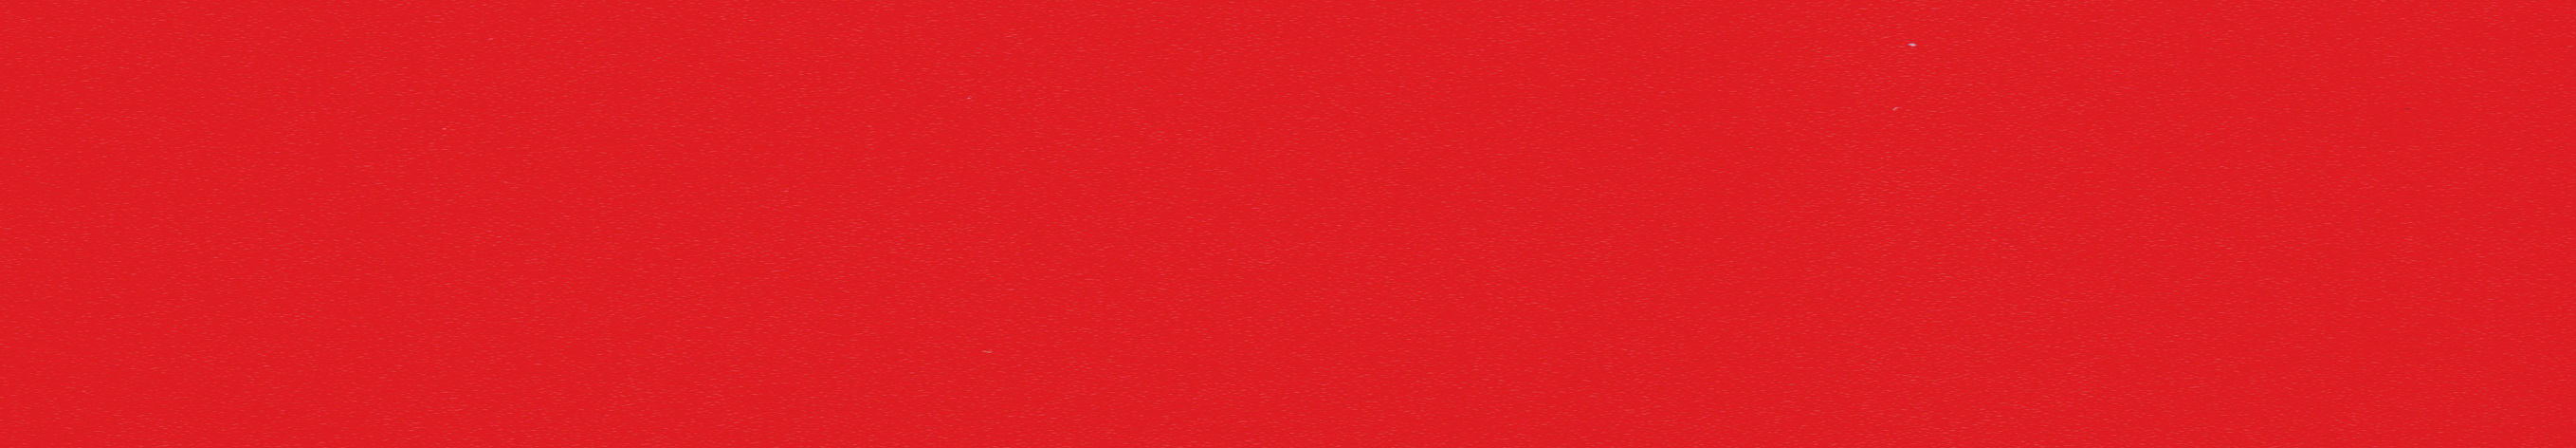 Кромка меламиновая 70657 червонная (красная) 19мм с клеем,100м бухта (Польша)